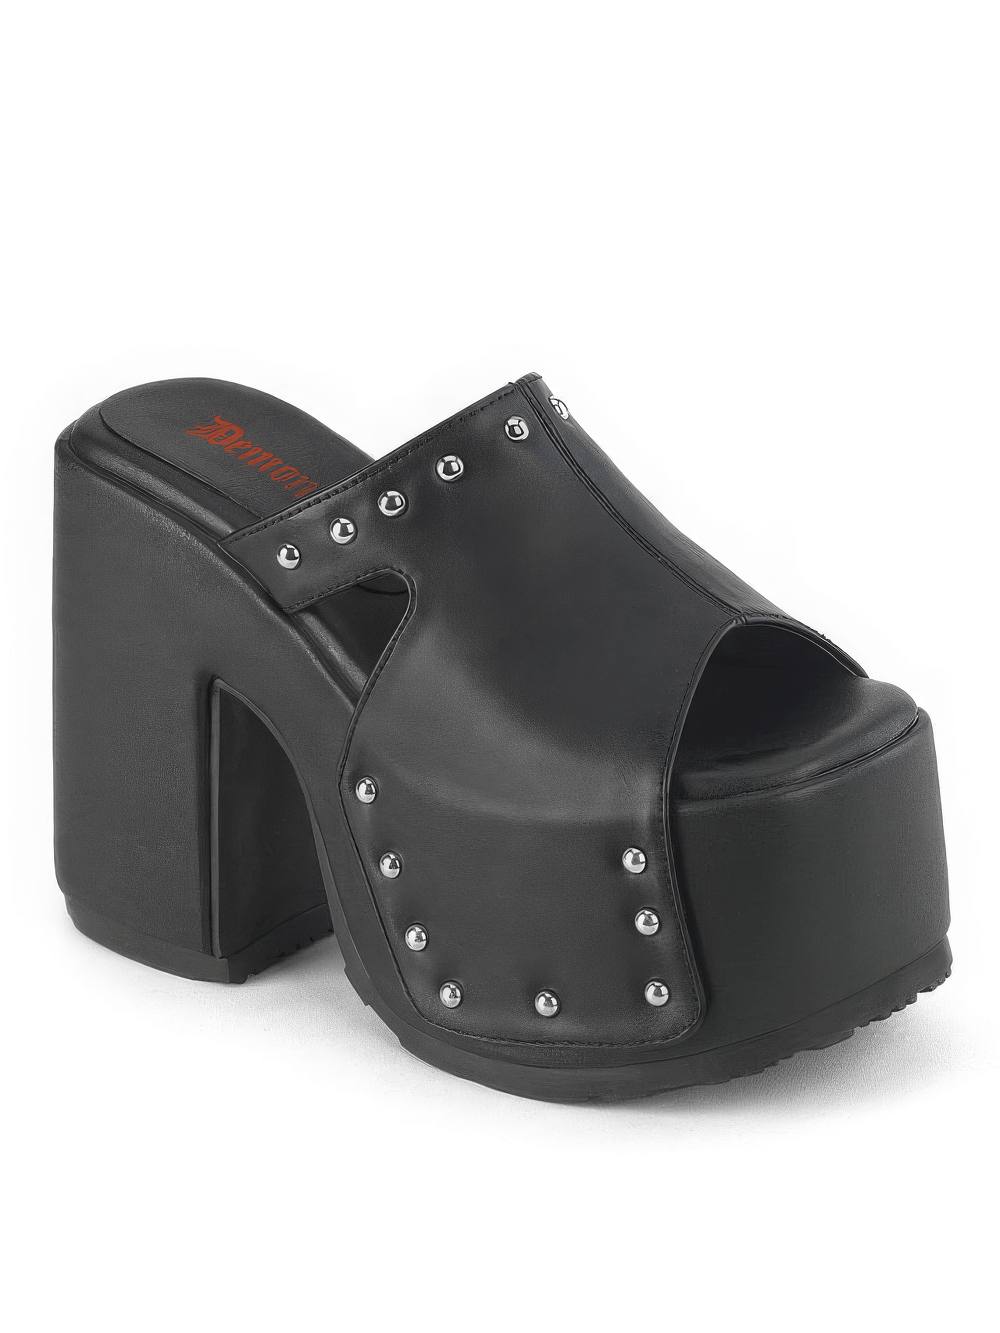 DEMONIA Black Platform Slide Sandals with Studded Details